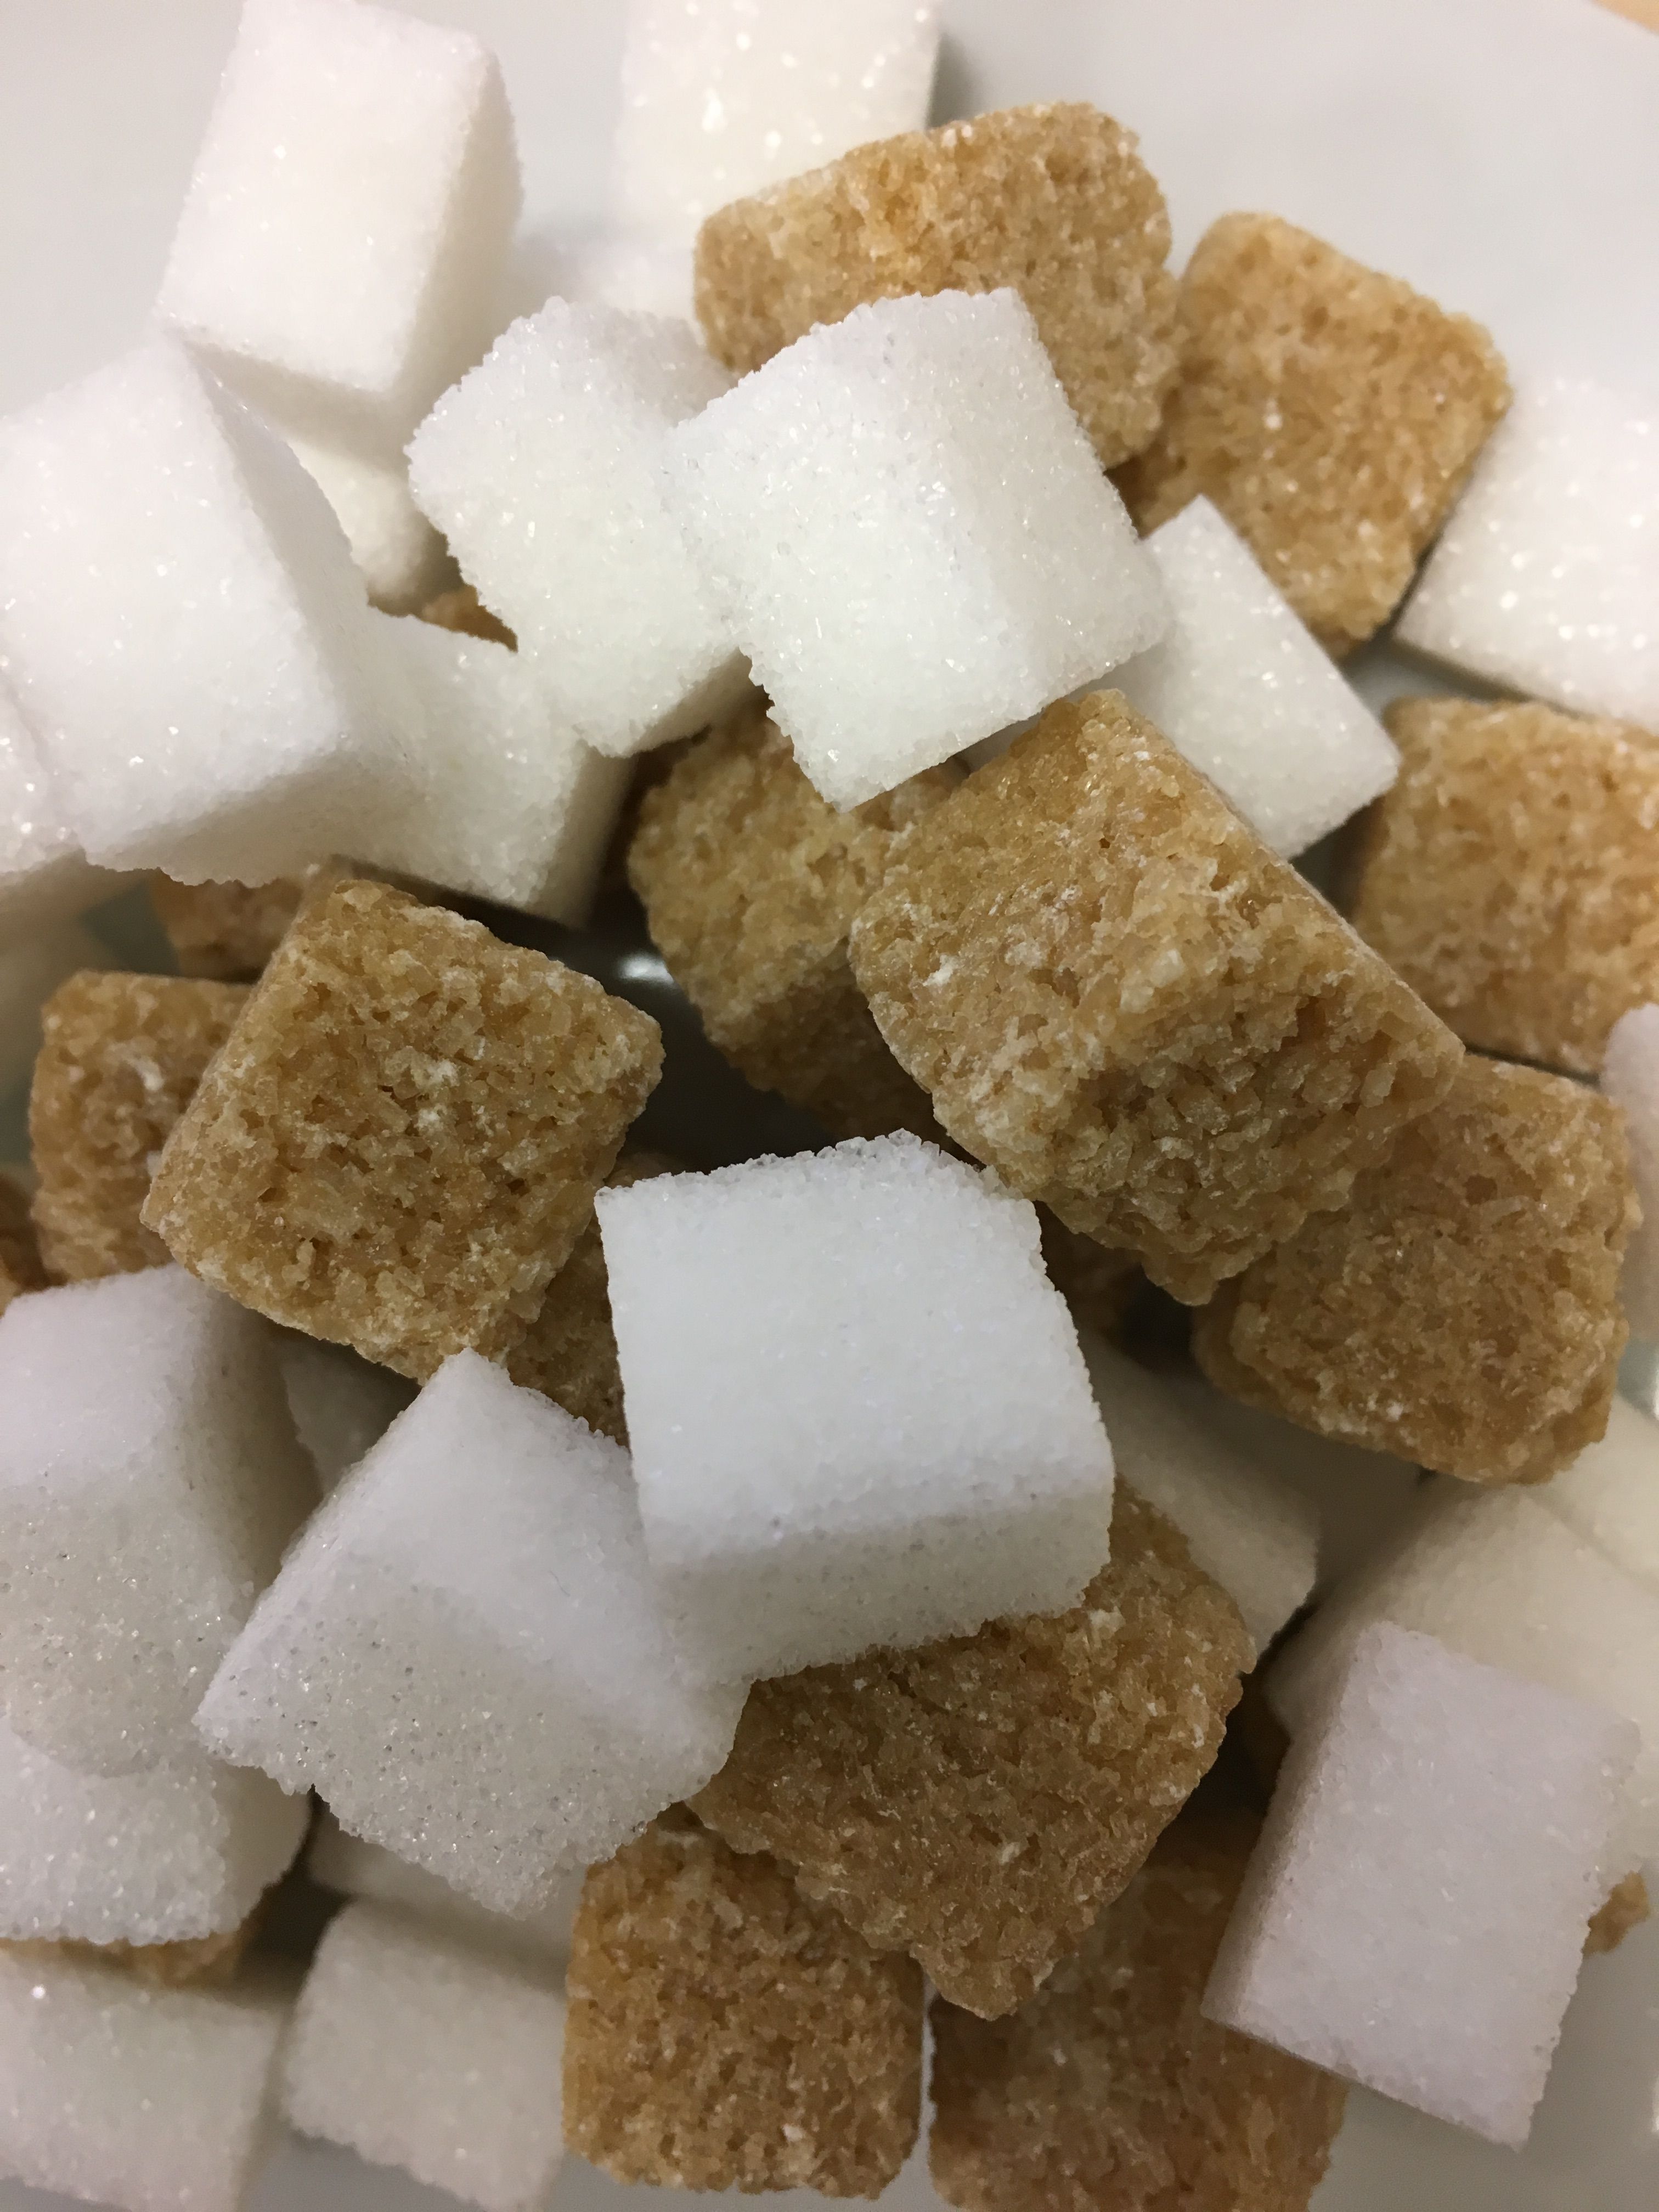 Die bittere Seite des Zuckers